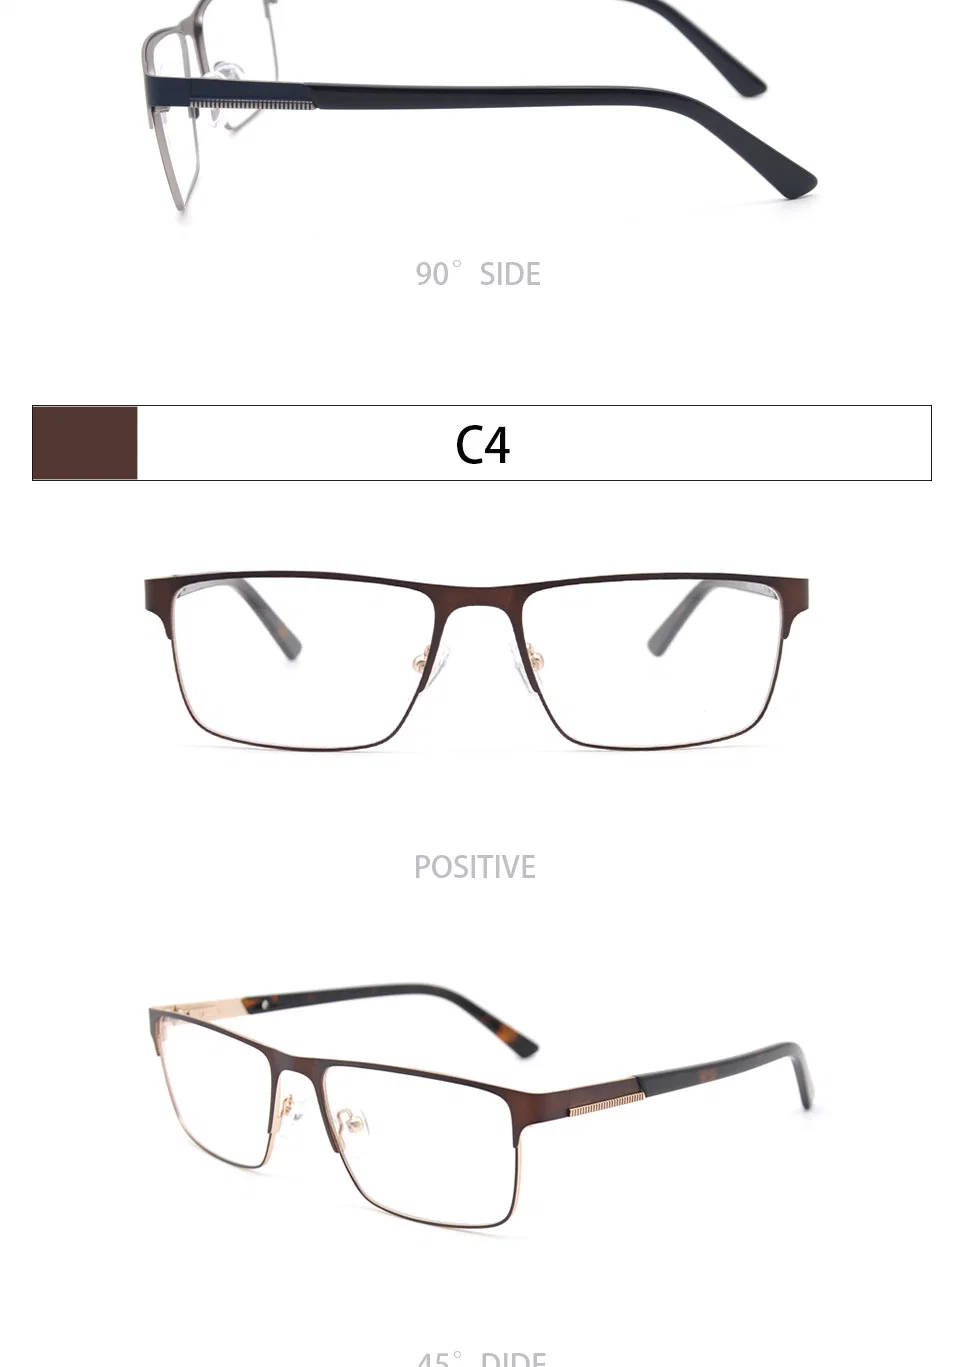 Most Popular CE Stainless Steel Eyeglasses Optical Frame for Men